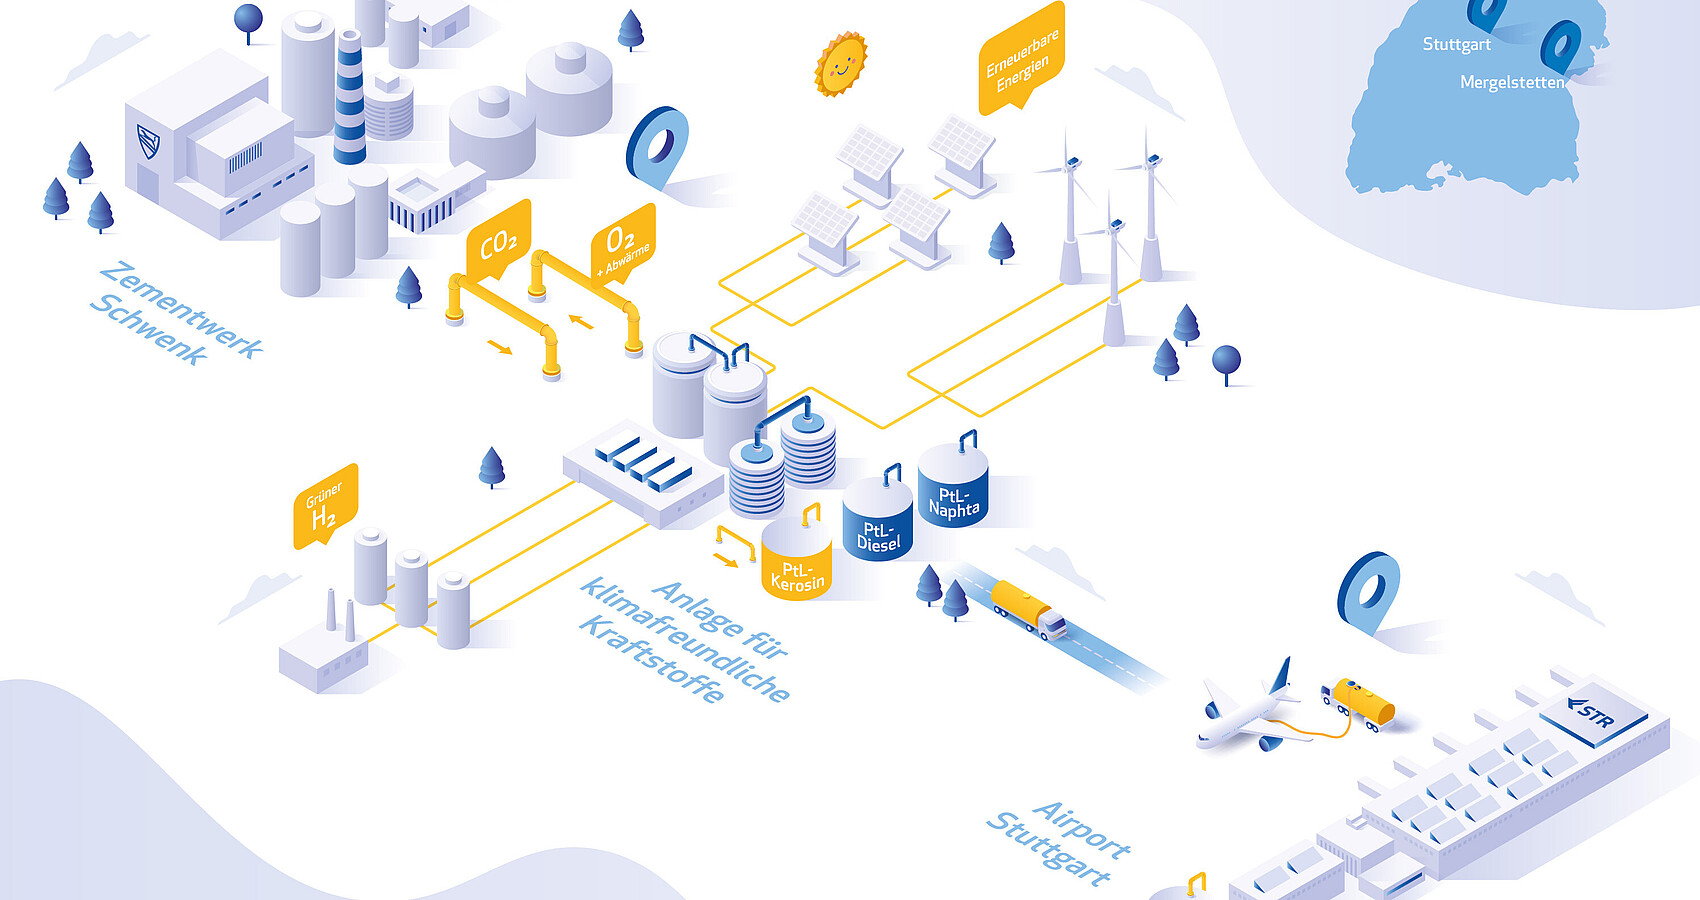 Bild zeigt eine Infografik mit dem Zementwerk Schwenk, der Anlage für klimafreundliche Kraftstoffe und dem Airport Stuttgart